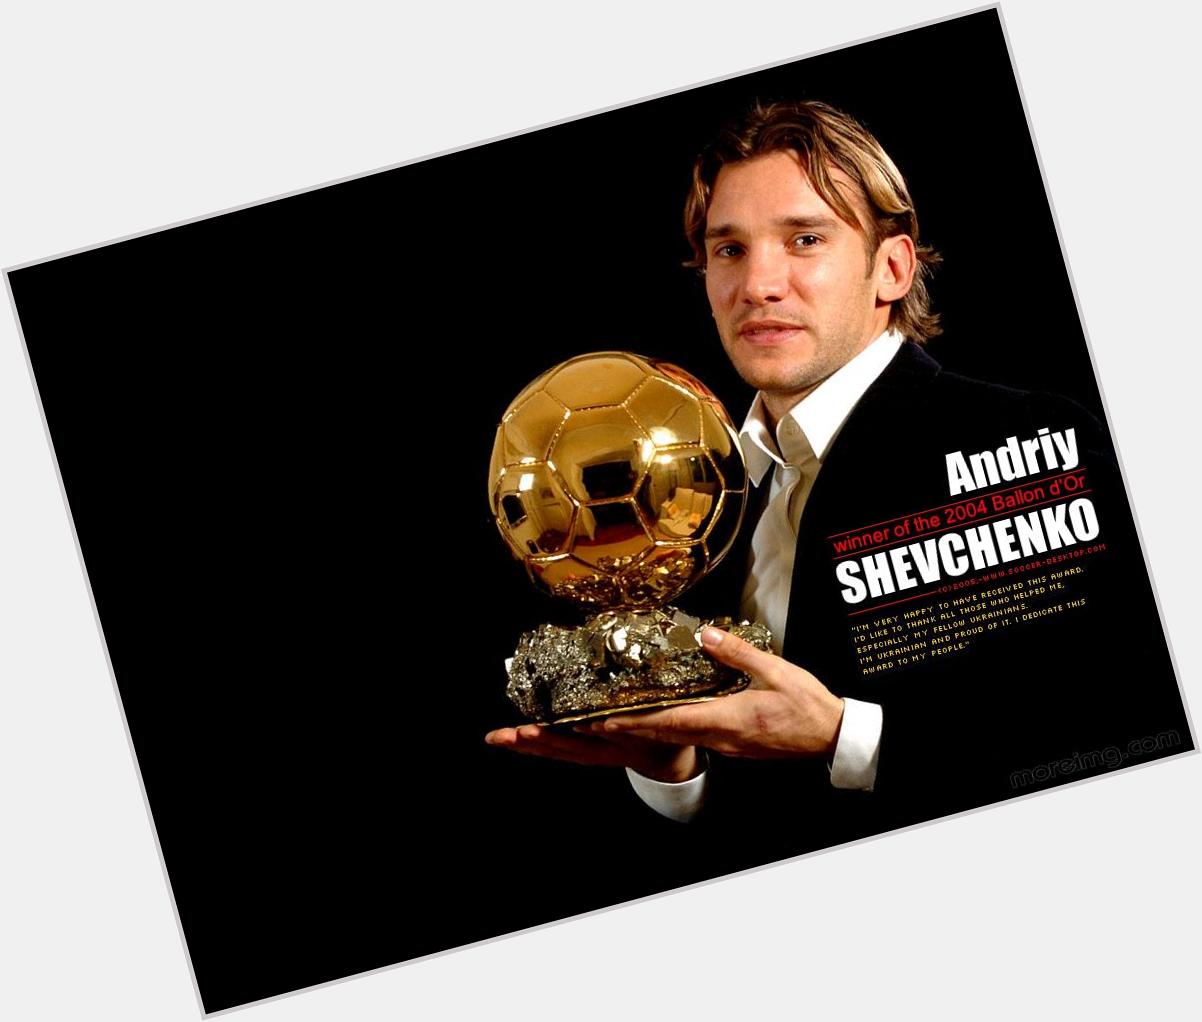  Happy birthday,2 a Soccer legend Andriy Shevchenko!   